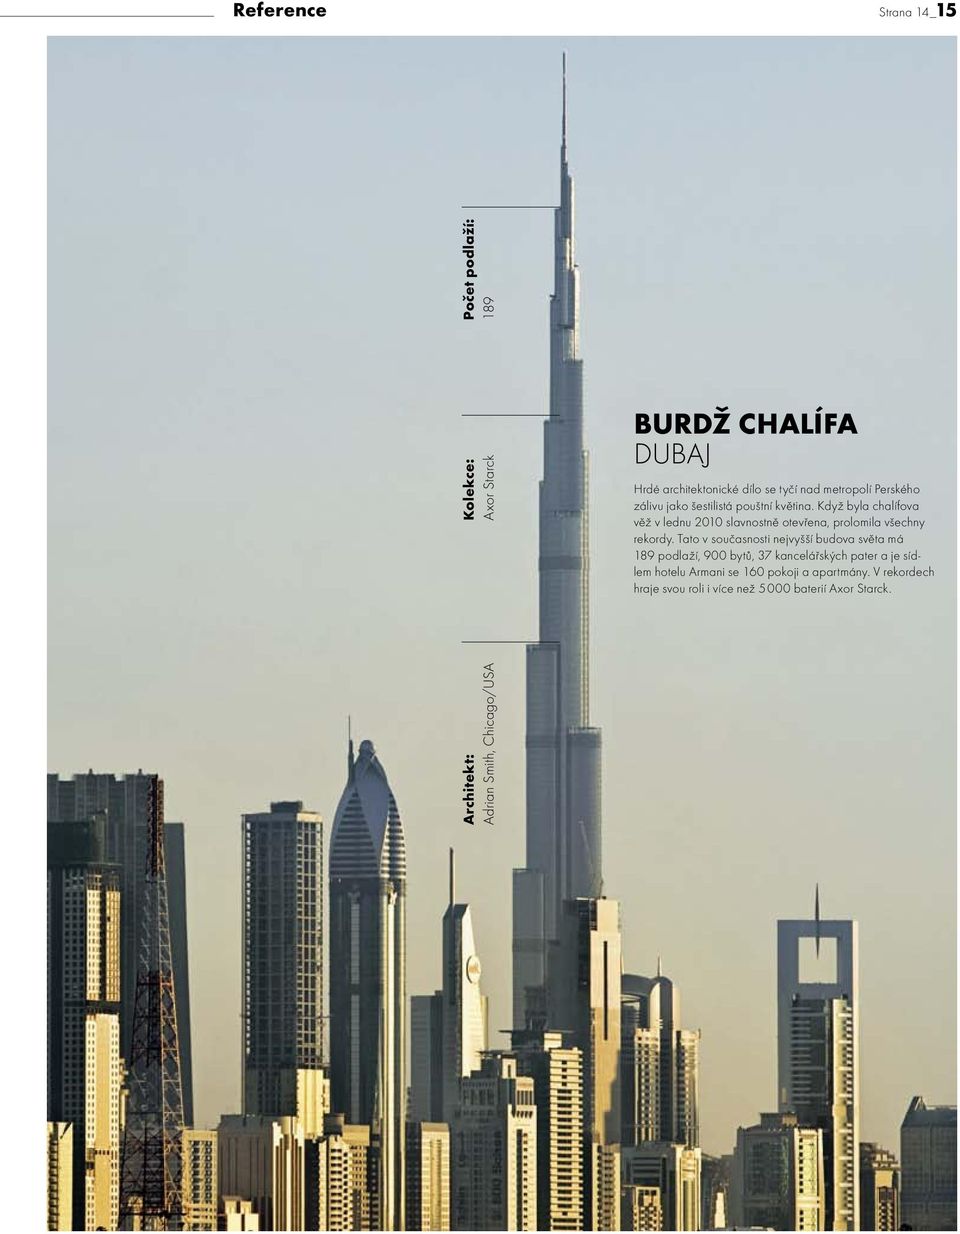 Když byla chalífova věž v lednu 2010 slavnostně otevřena, prolomila všechny rekordy.